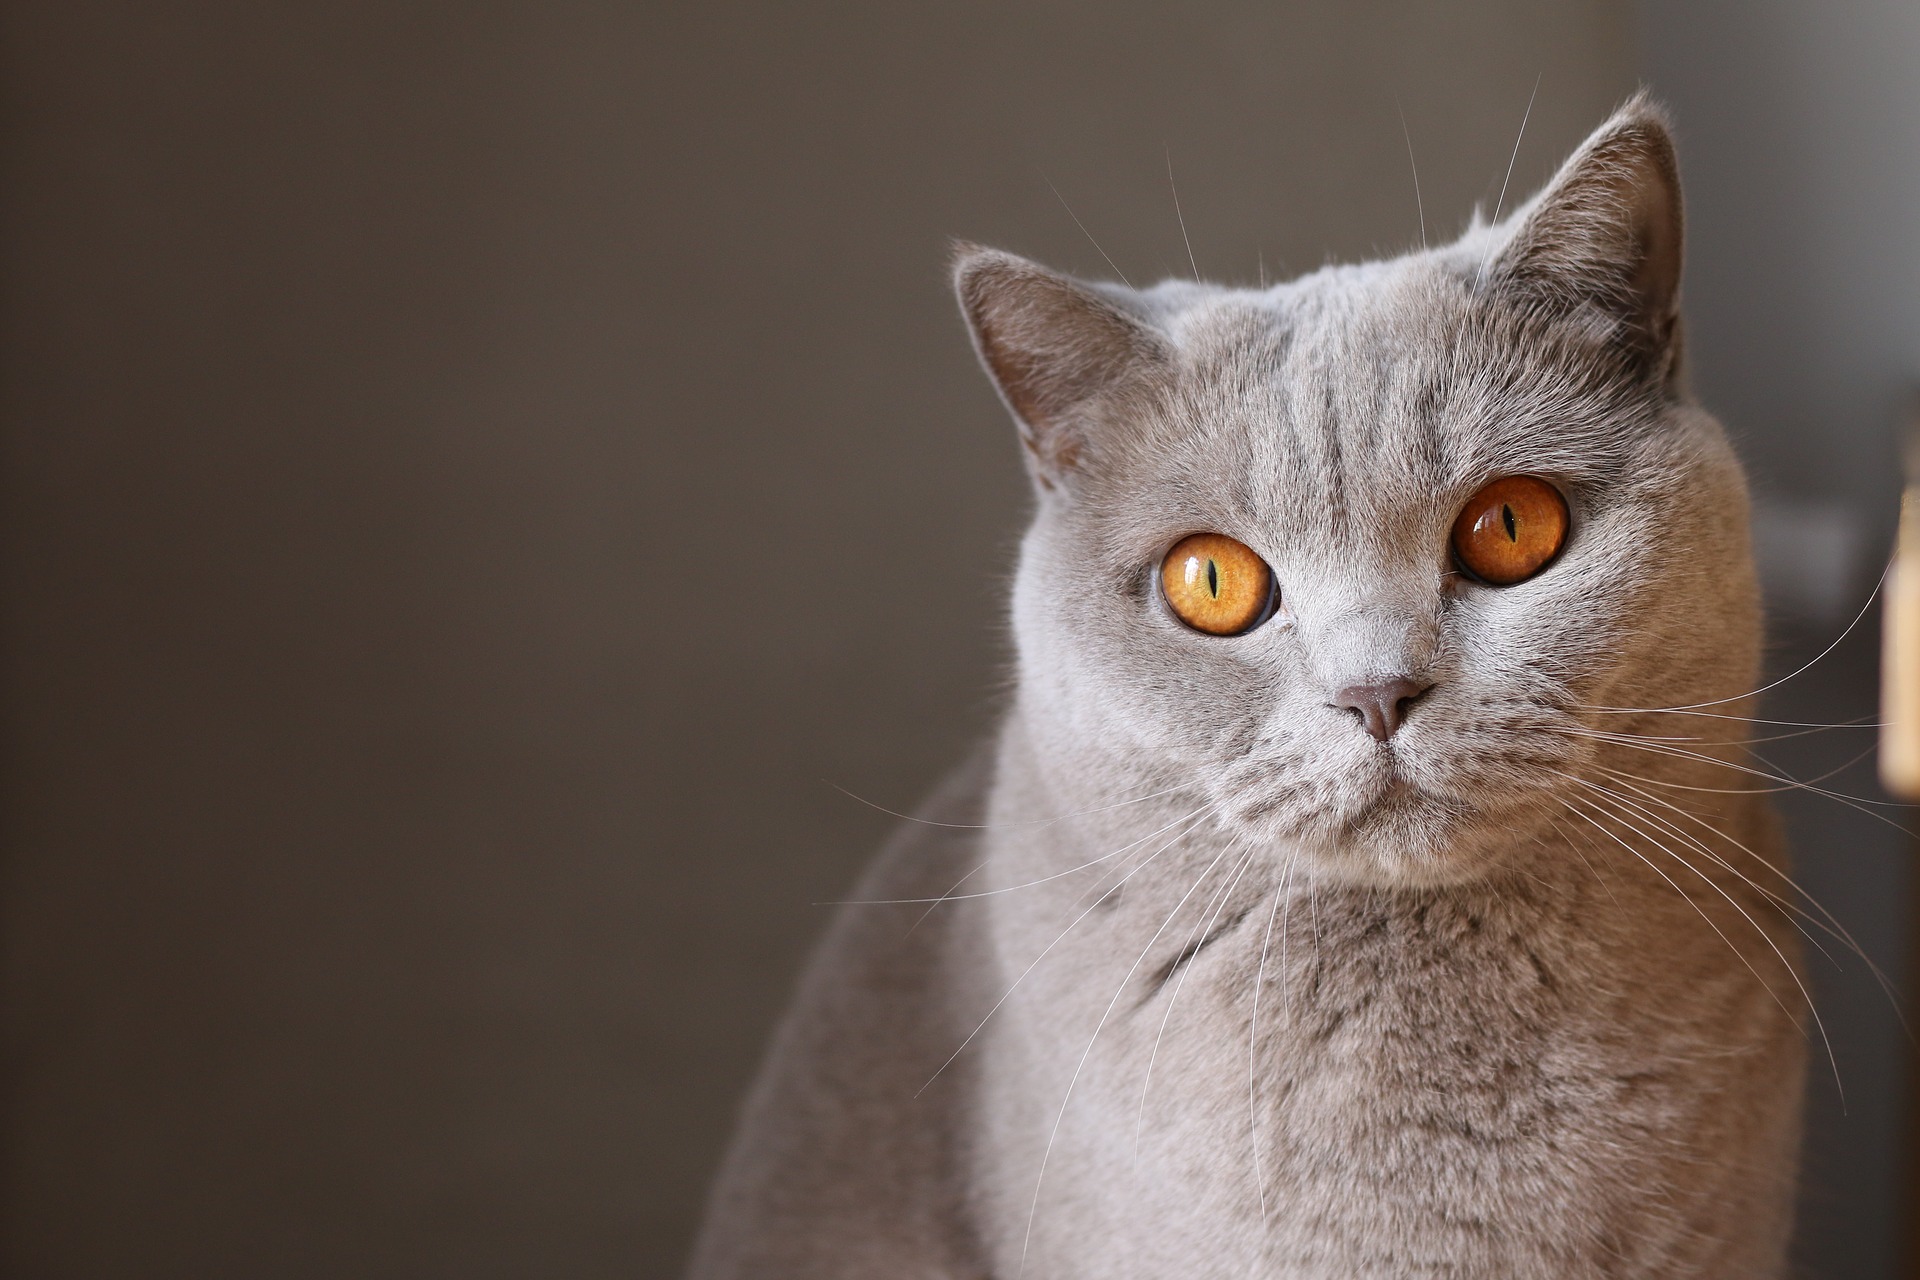 pale grey cat with striking orange eyes staring at you